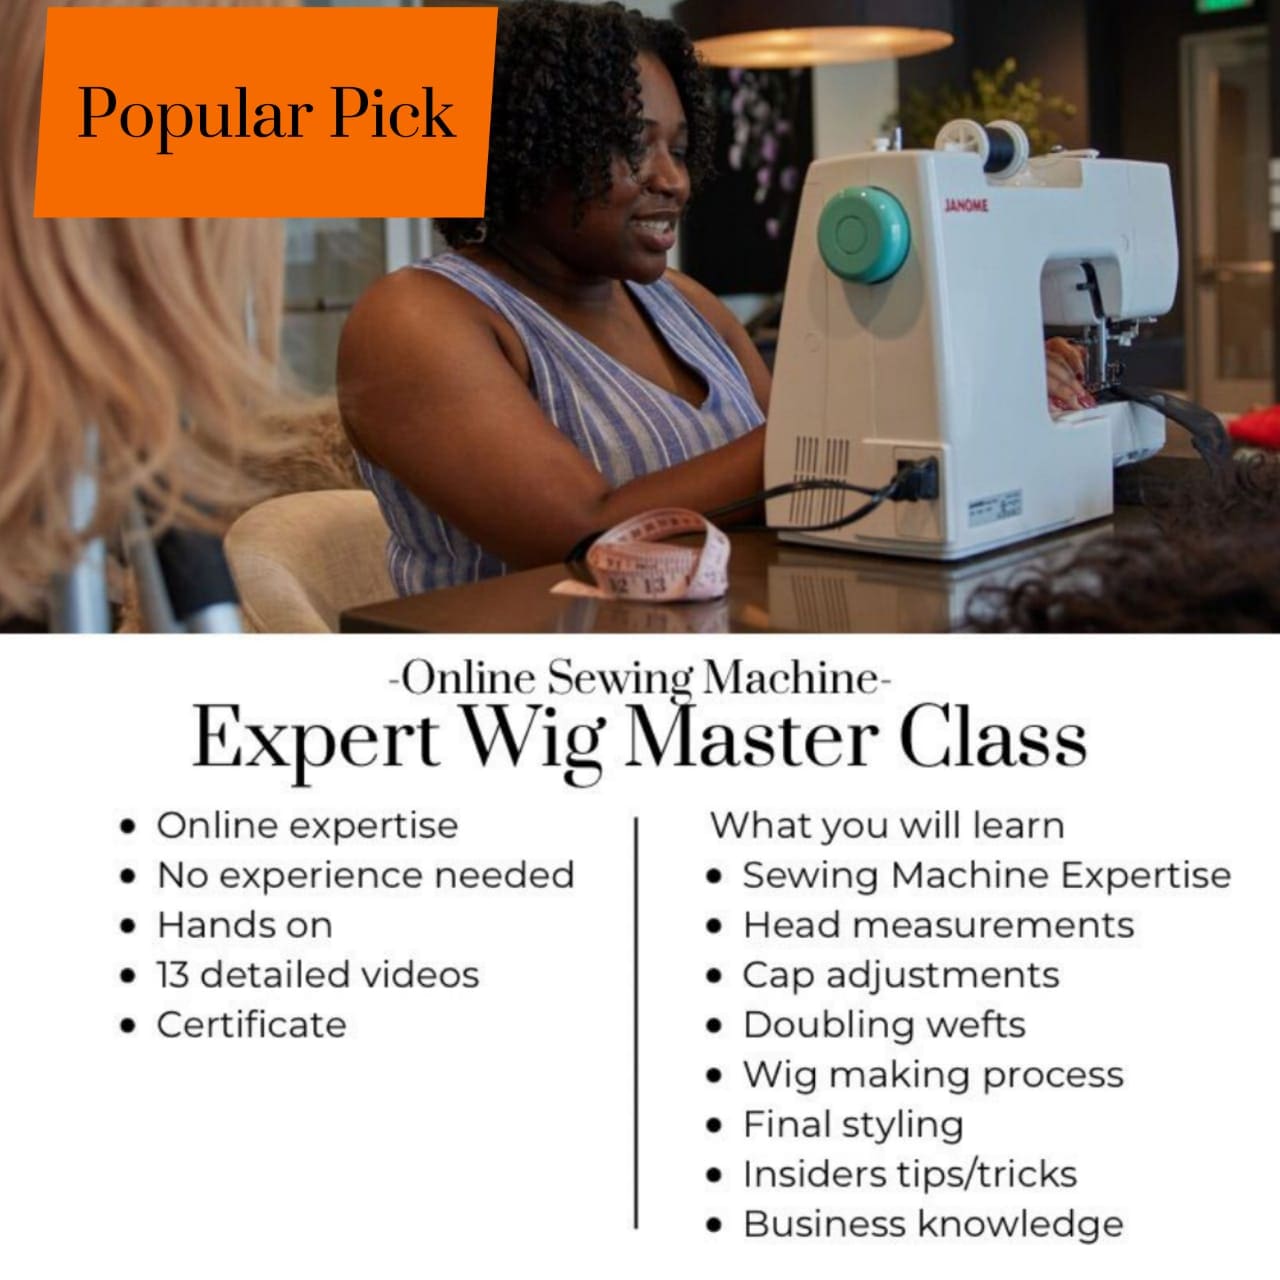 ‘Expert’ Wig Master Class